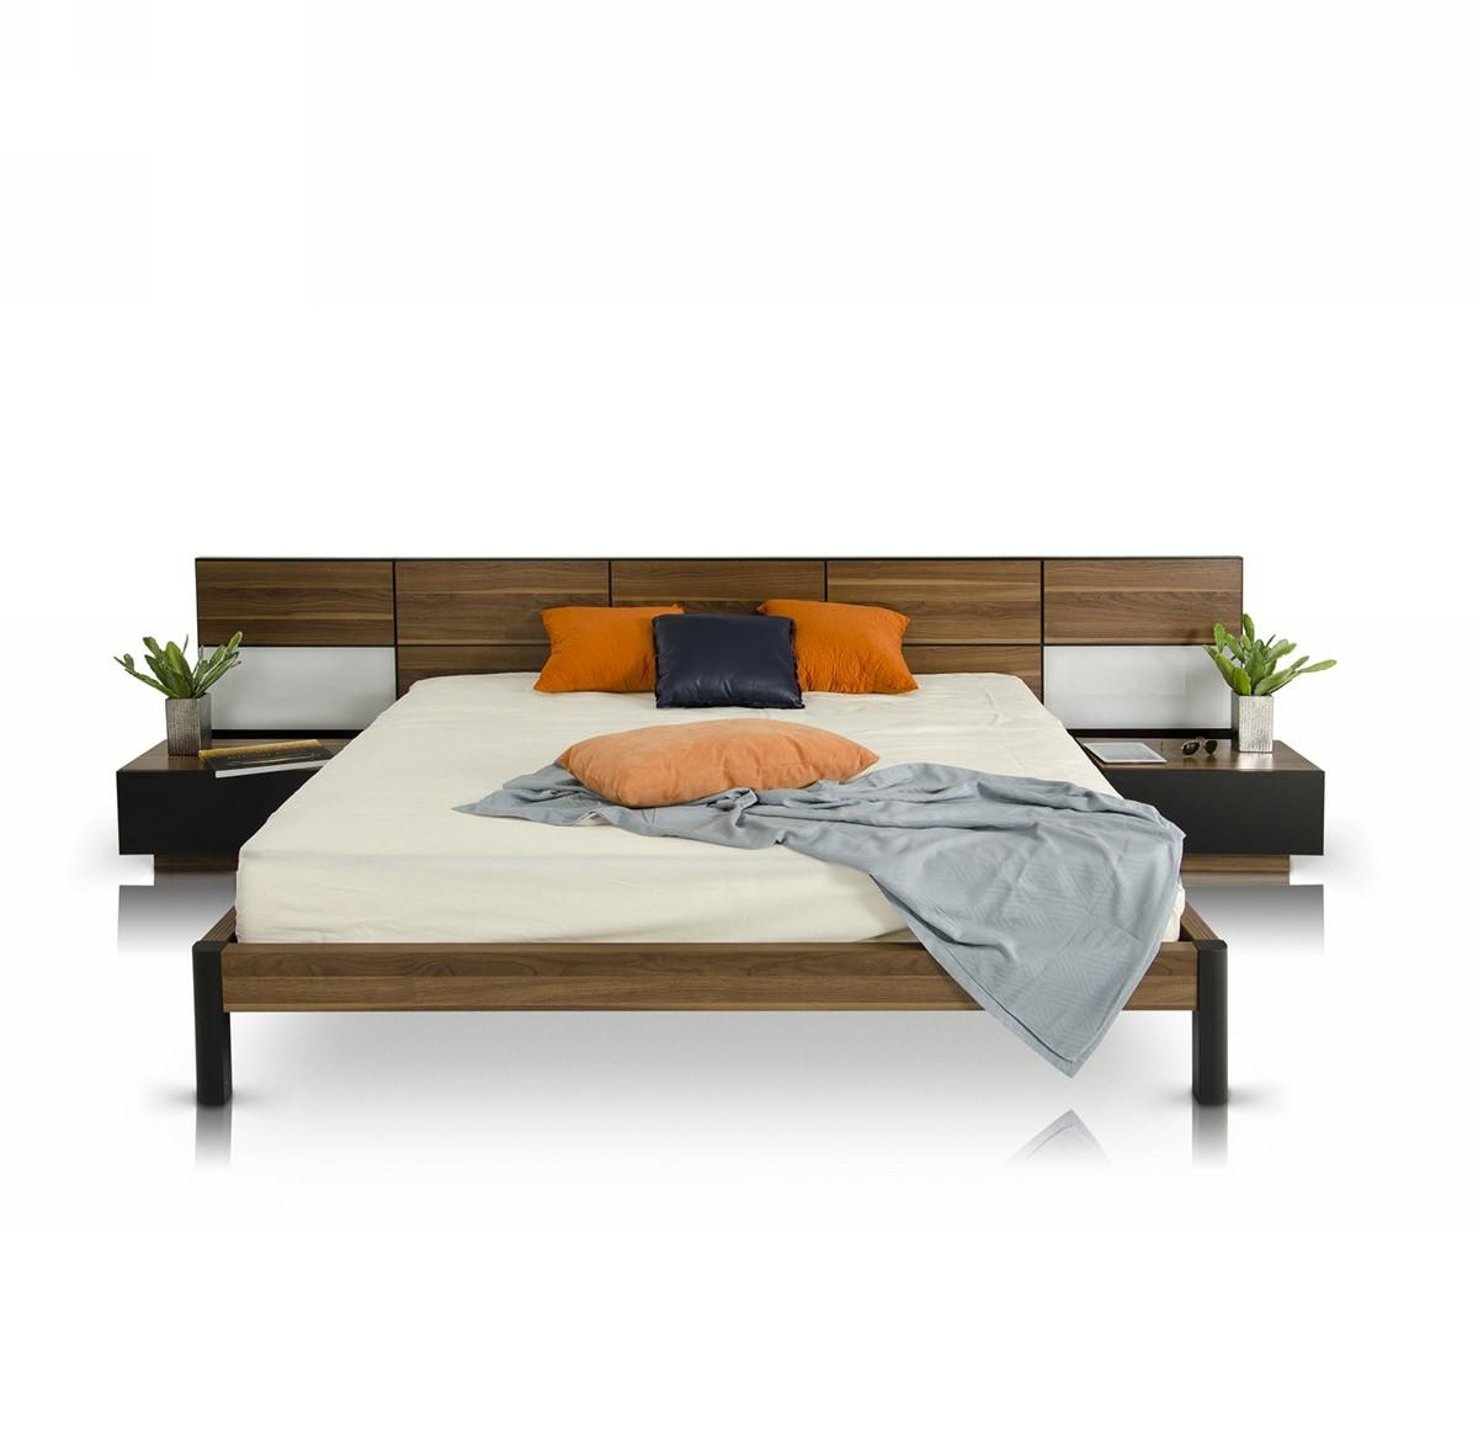 Discover Bedroom Furniture Deals - VIG Modrest Rondo Queen Platform Bed in Walnut, Leatherette